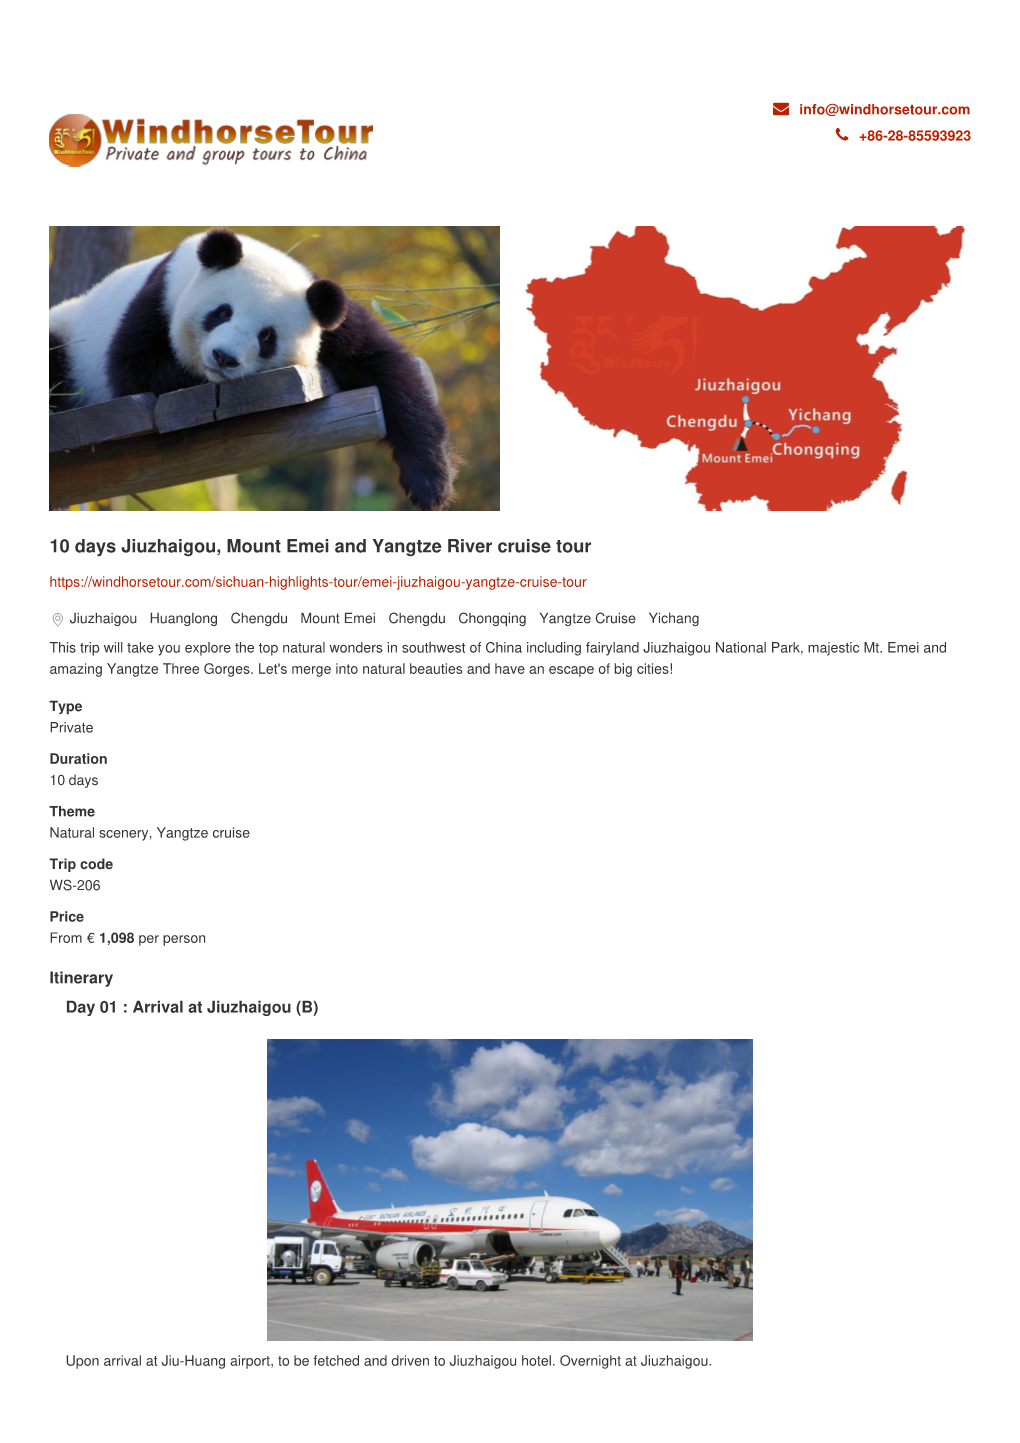 10 Days Jiuzhaigou, Mount Emei and Yangtze River Cruise Tour